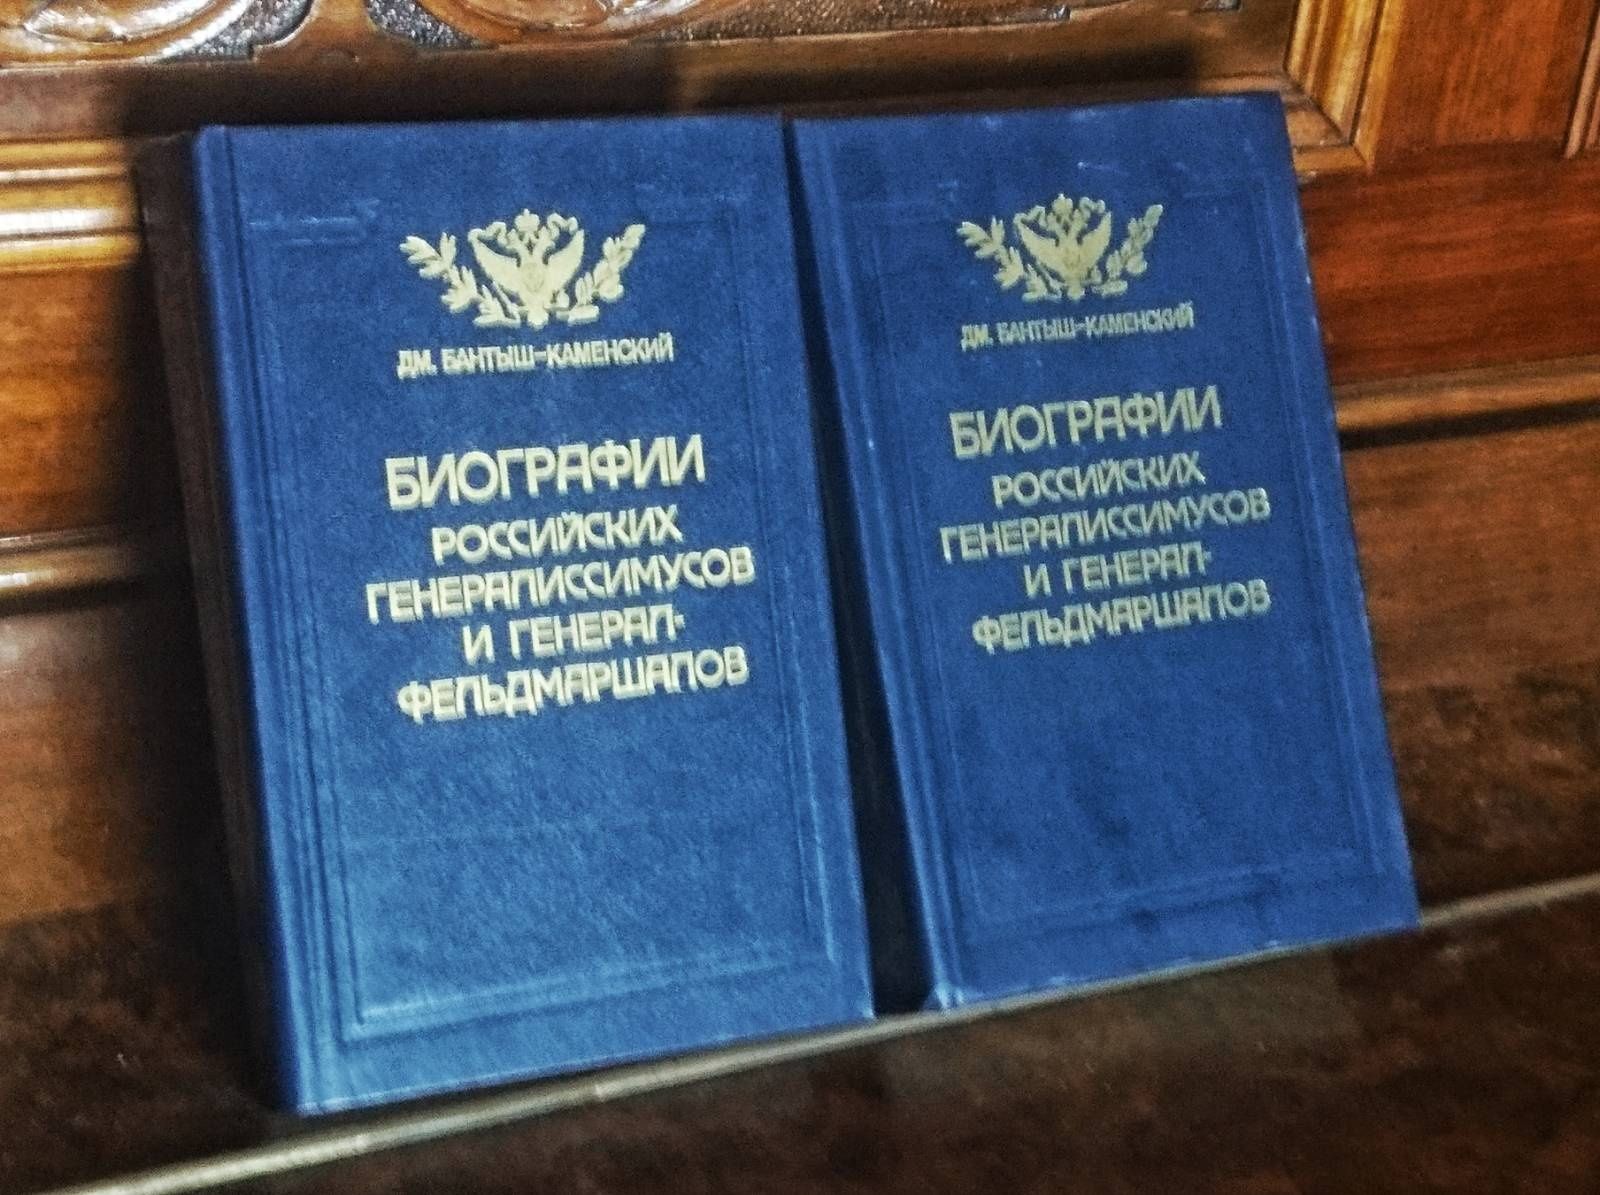 Дм. Бантыш-Каменский биографии генералиссимусов (репринт 1840)